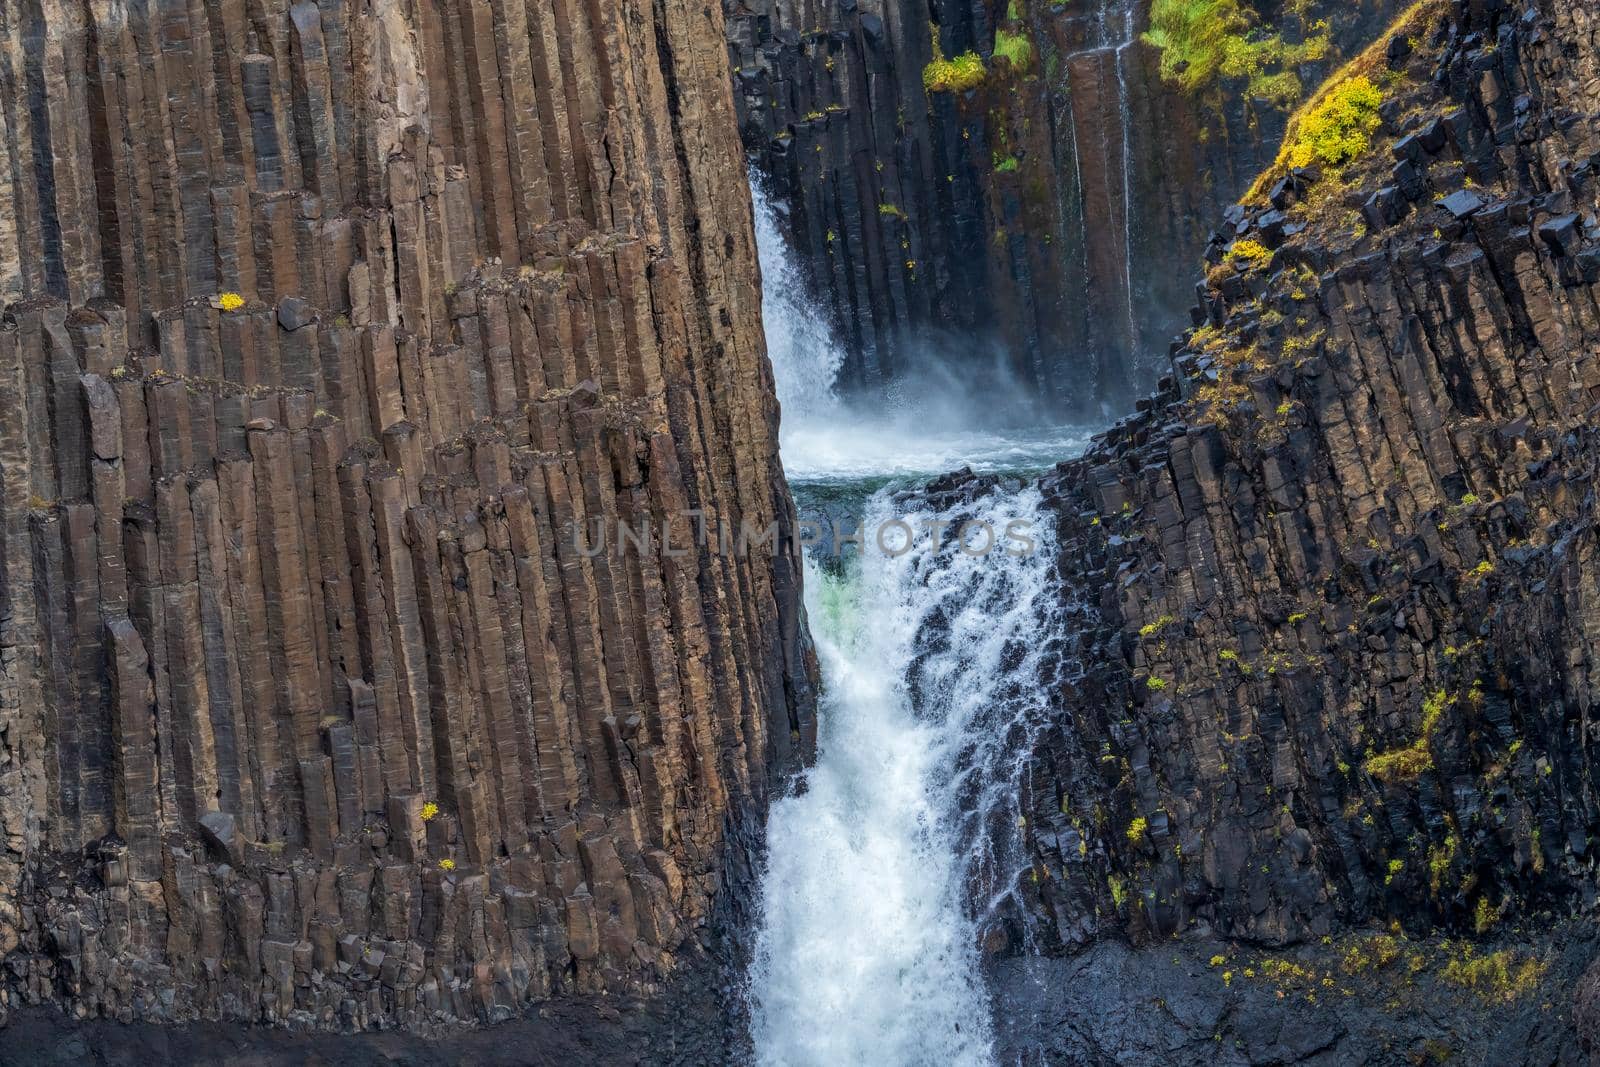 Closeup view of waterfall and basaltic rock walls